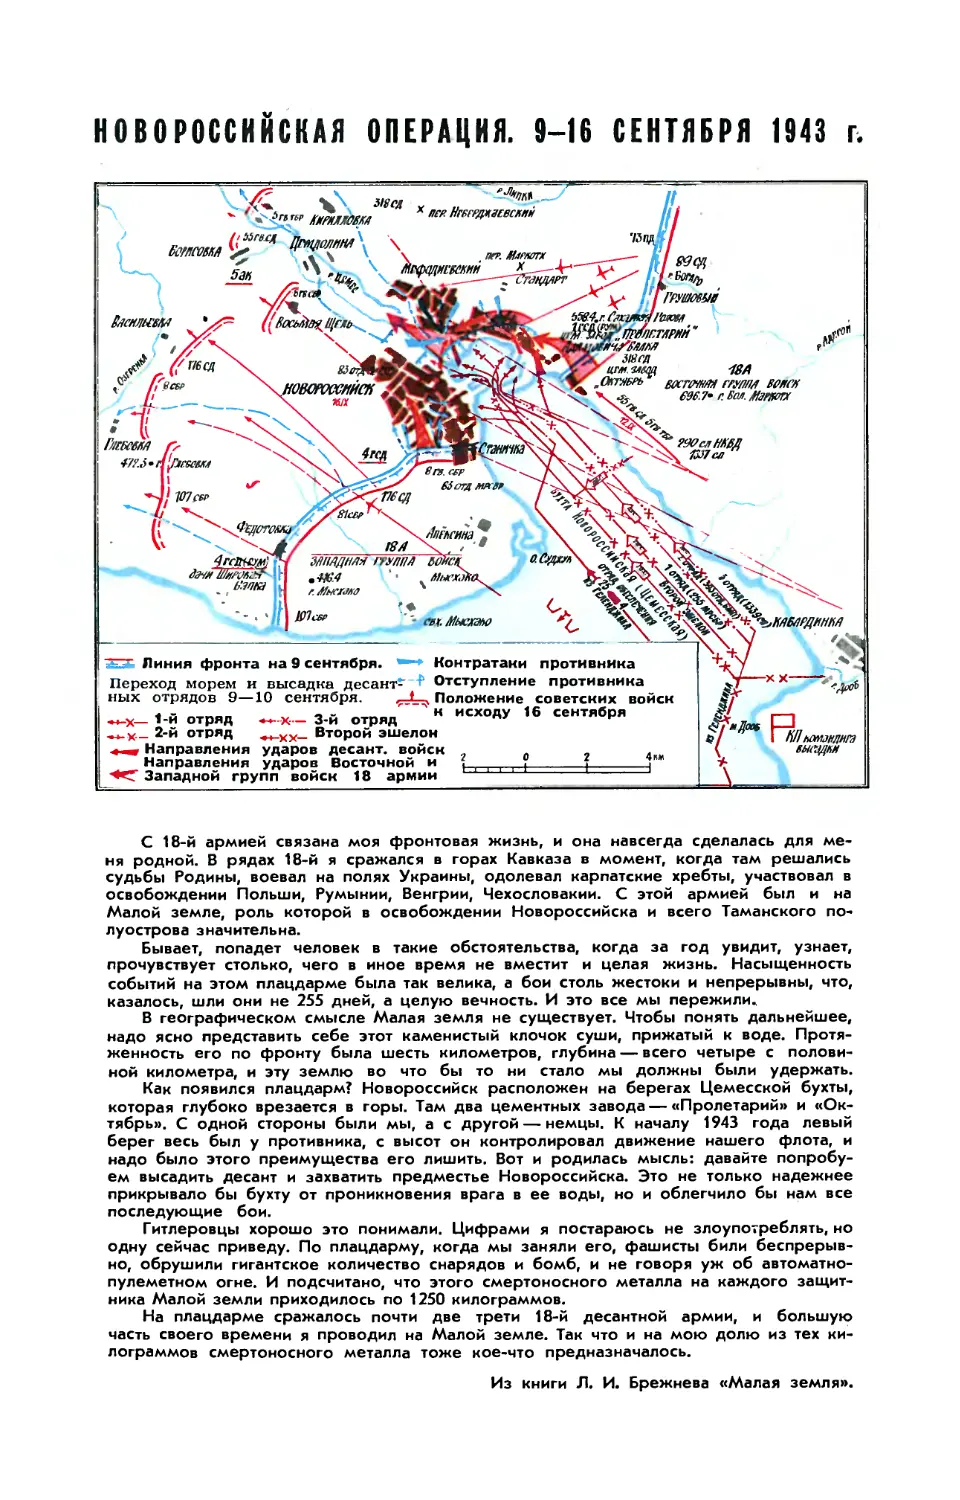 Новороссийская операция 9—16 сентября 1943 г.